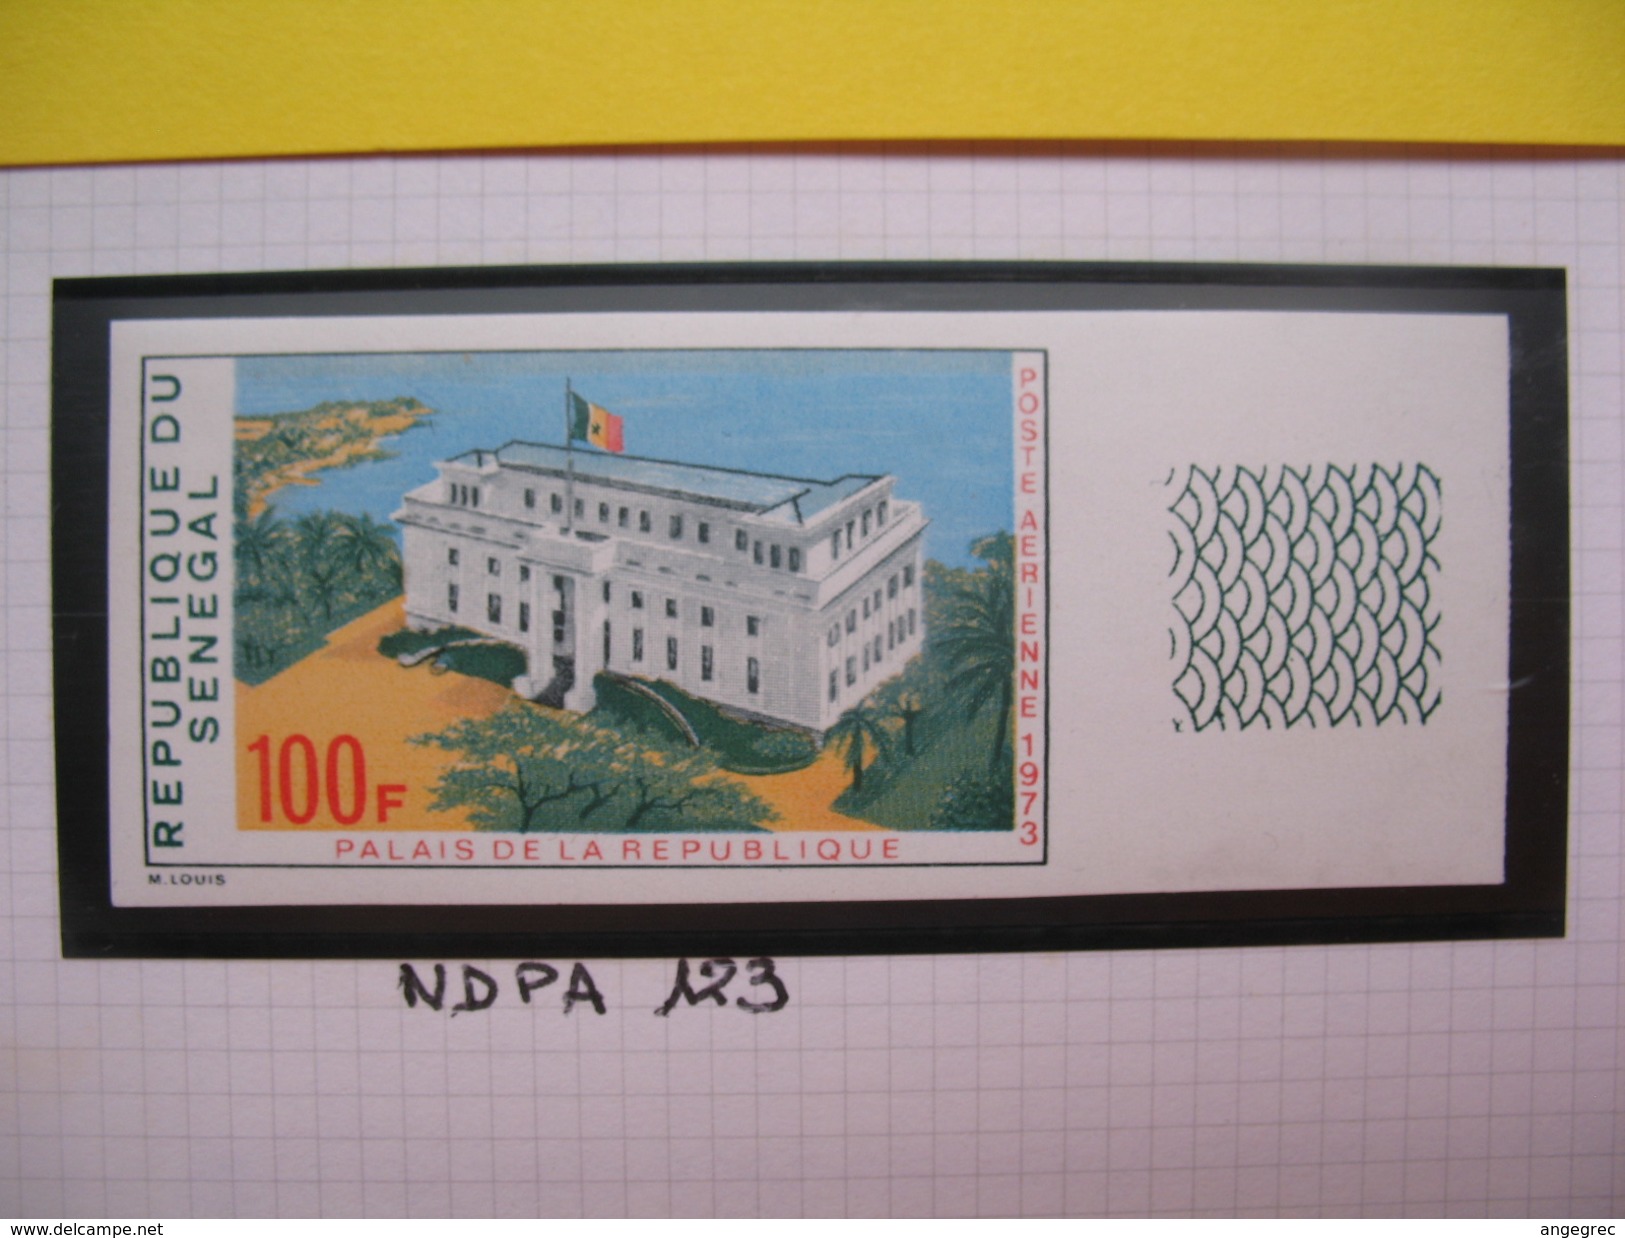 Timbre Non Dentelé   N° 123  Palais De La République    1973 - Sénégal (1960-...)